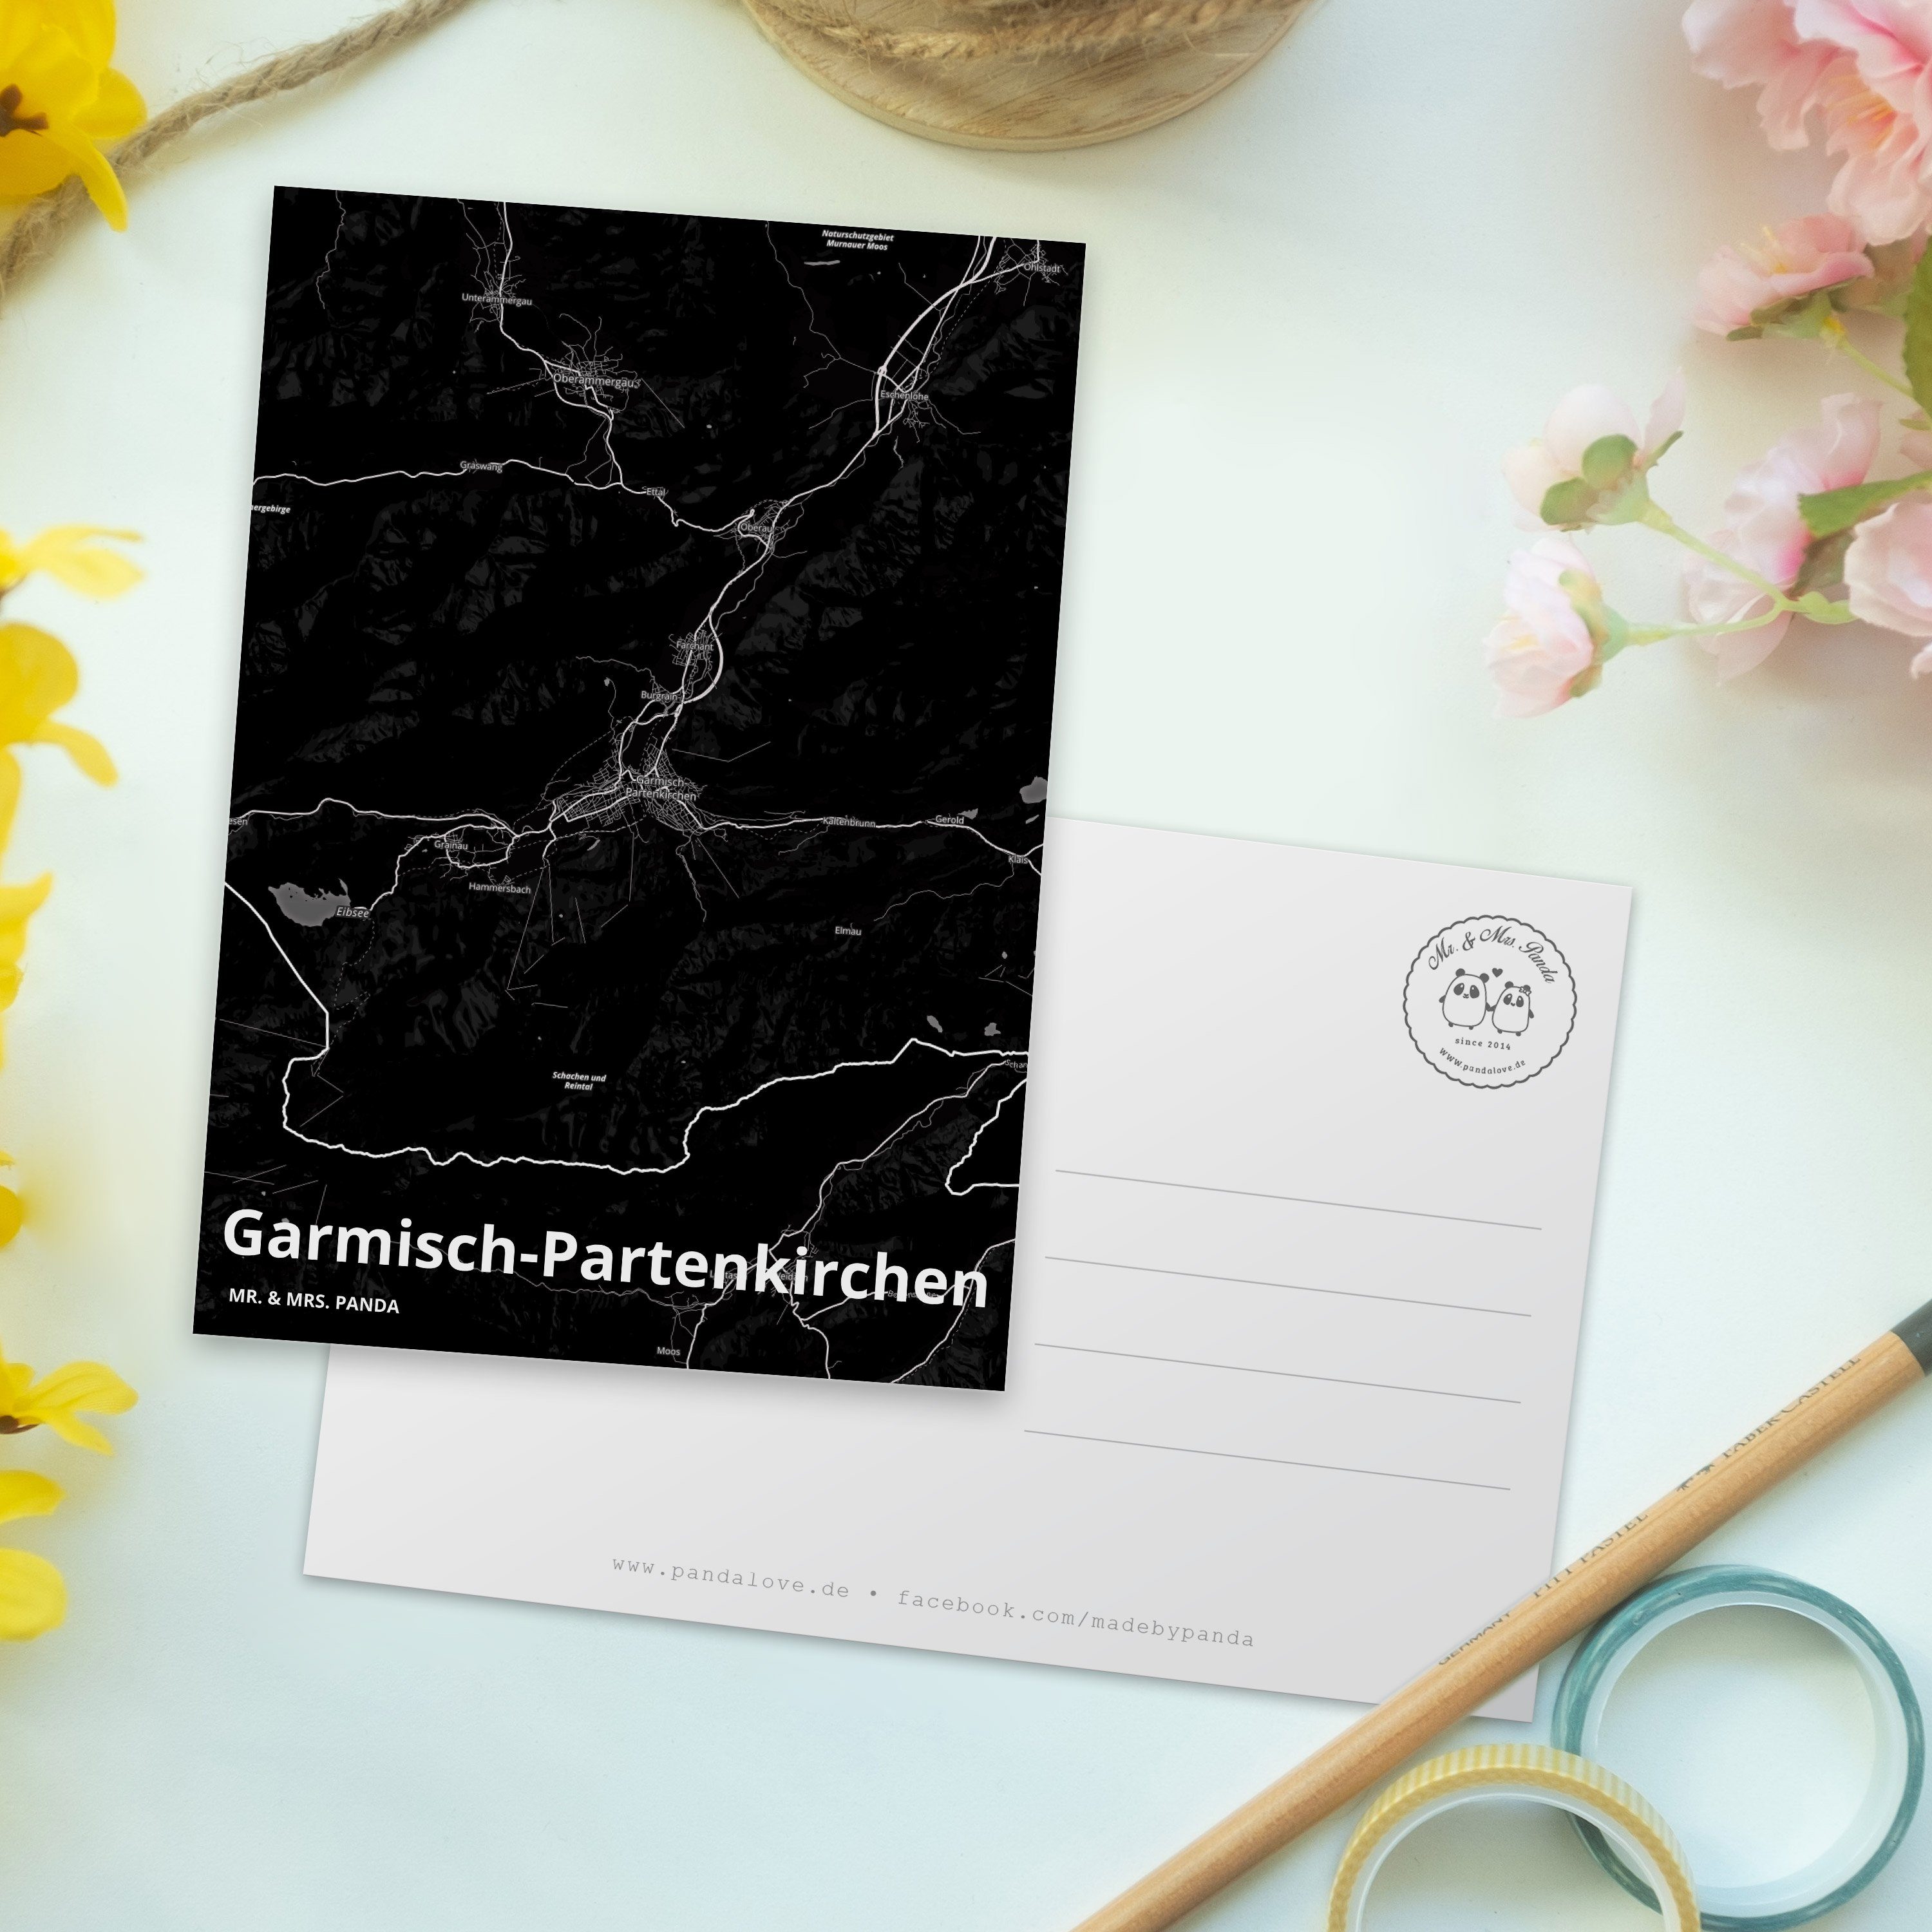 Dankeskarte, Geschenk, Garmisch-Partenkirchen Ort, Gesch Panda Mrs. Grußkarte, - & Mr. Postkarte